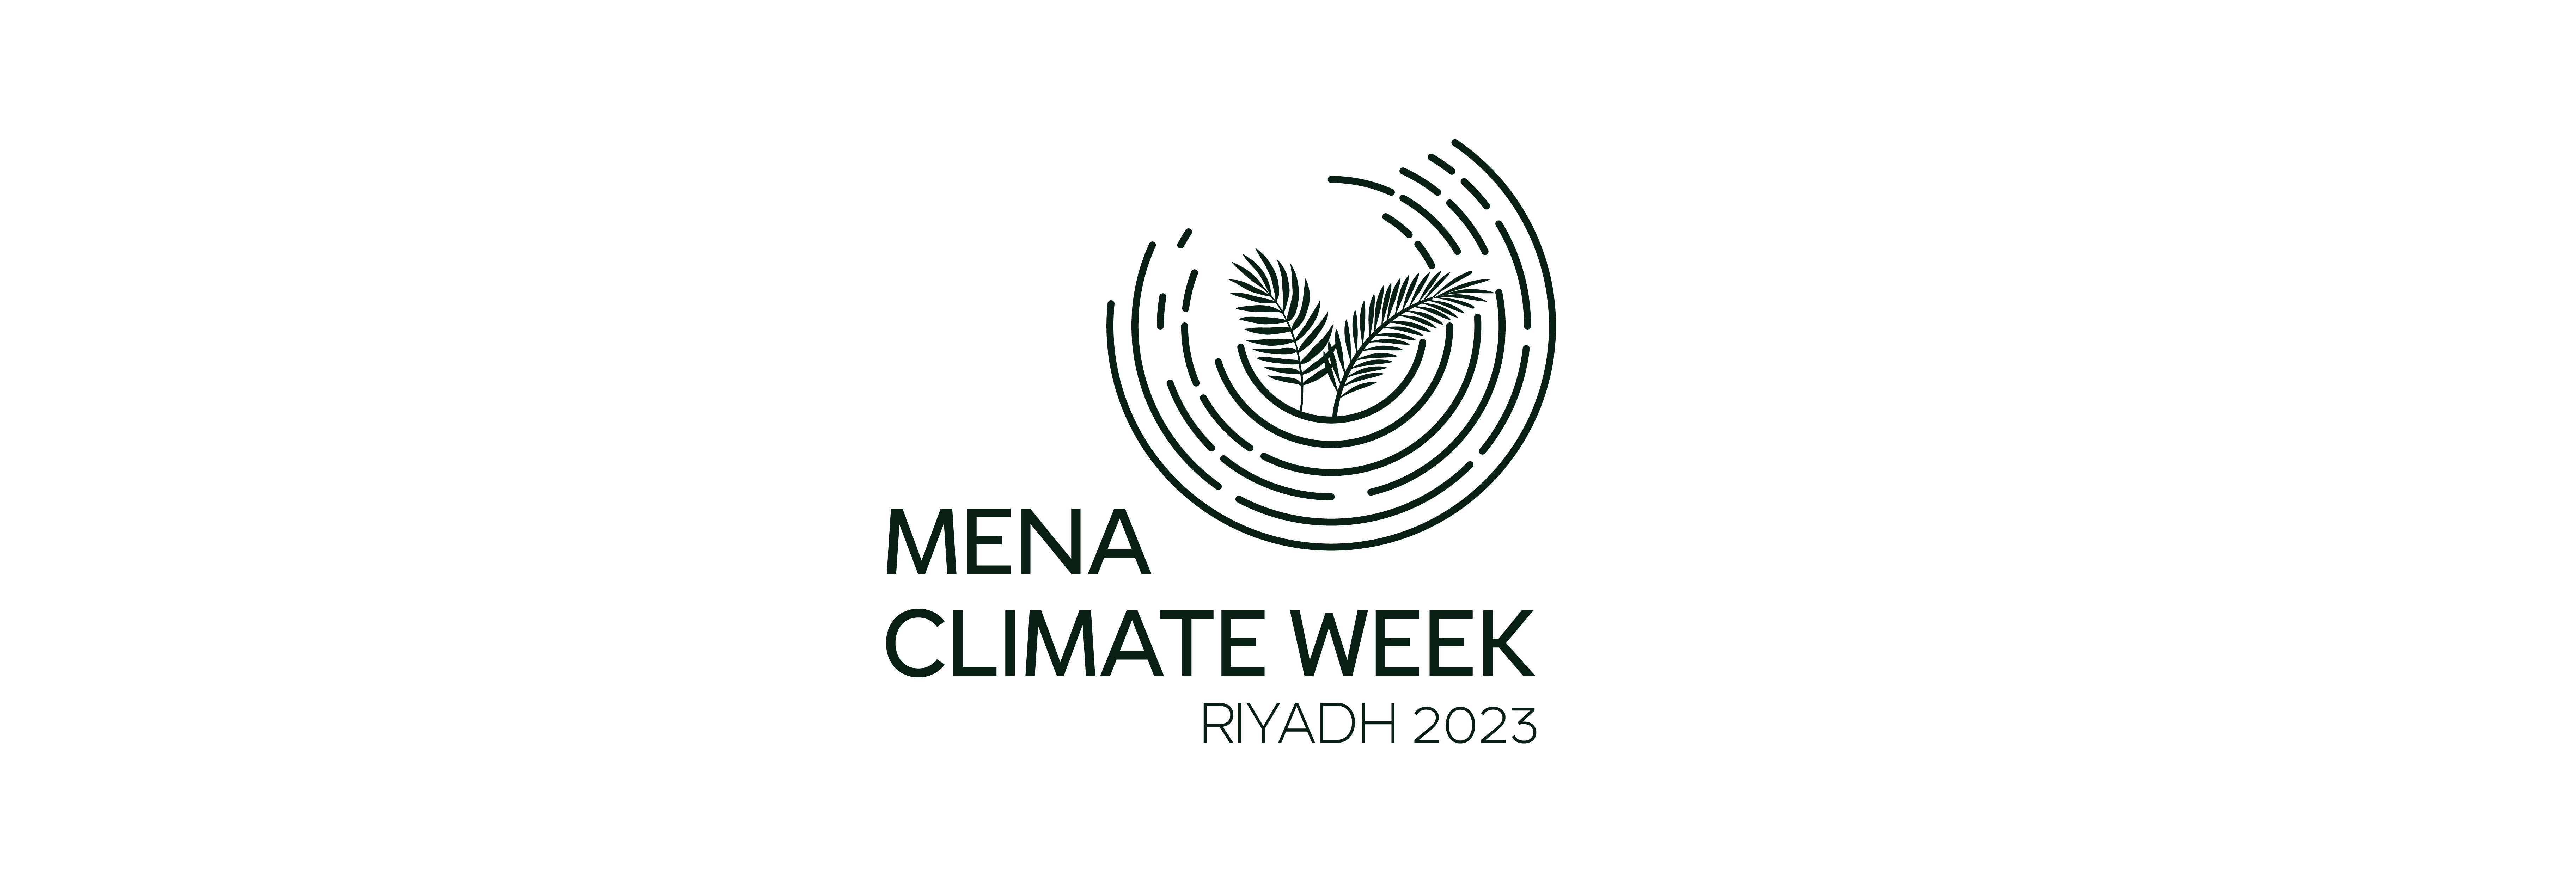 أسبوع المناخ في منطقة الشرق الأوسط وشمال أفريقيا يعكس التزام المنطقة بالعمل المناخي الشامل قبل مؤتمر الأطراف (كوب٢٨)